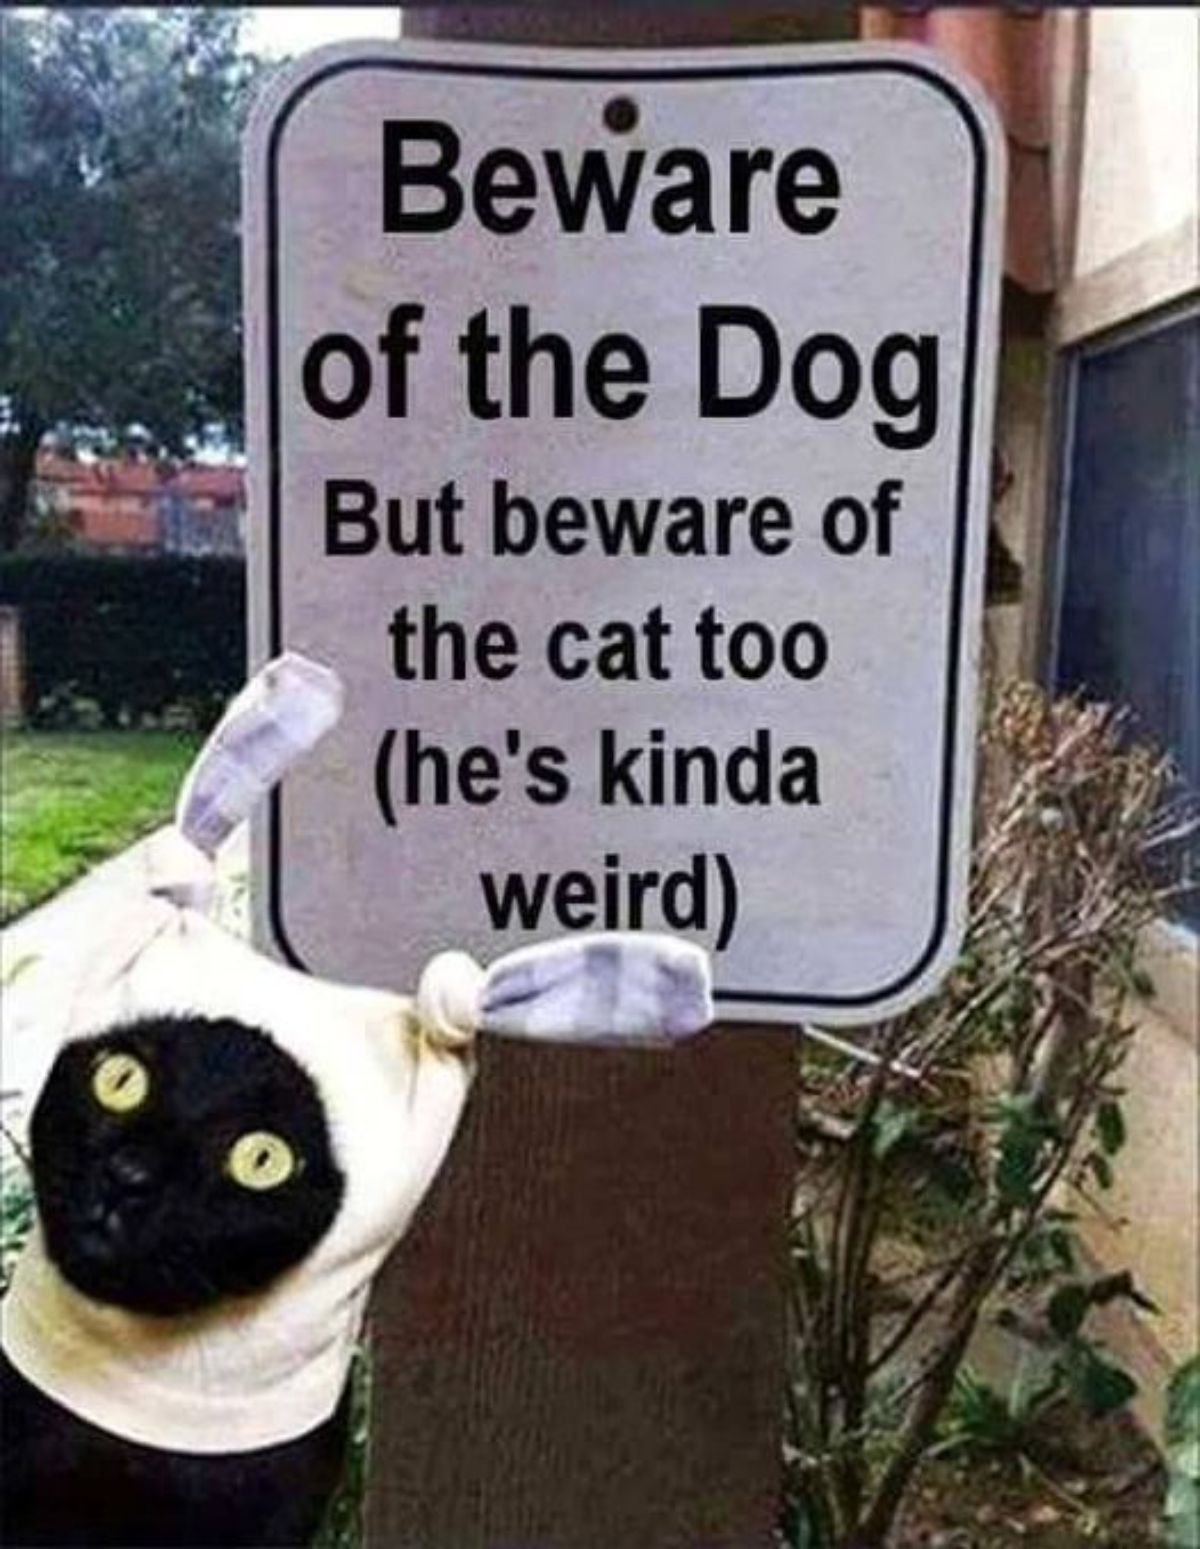 beware of the cat he's kinda weird - Beware of the Dog But beware of the cat too he's kinda weird